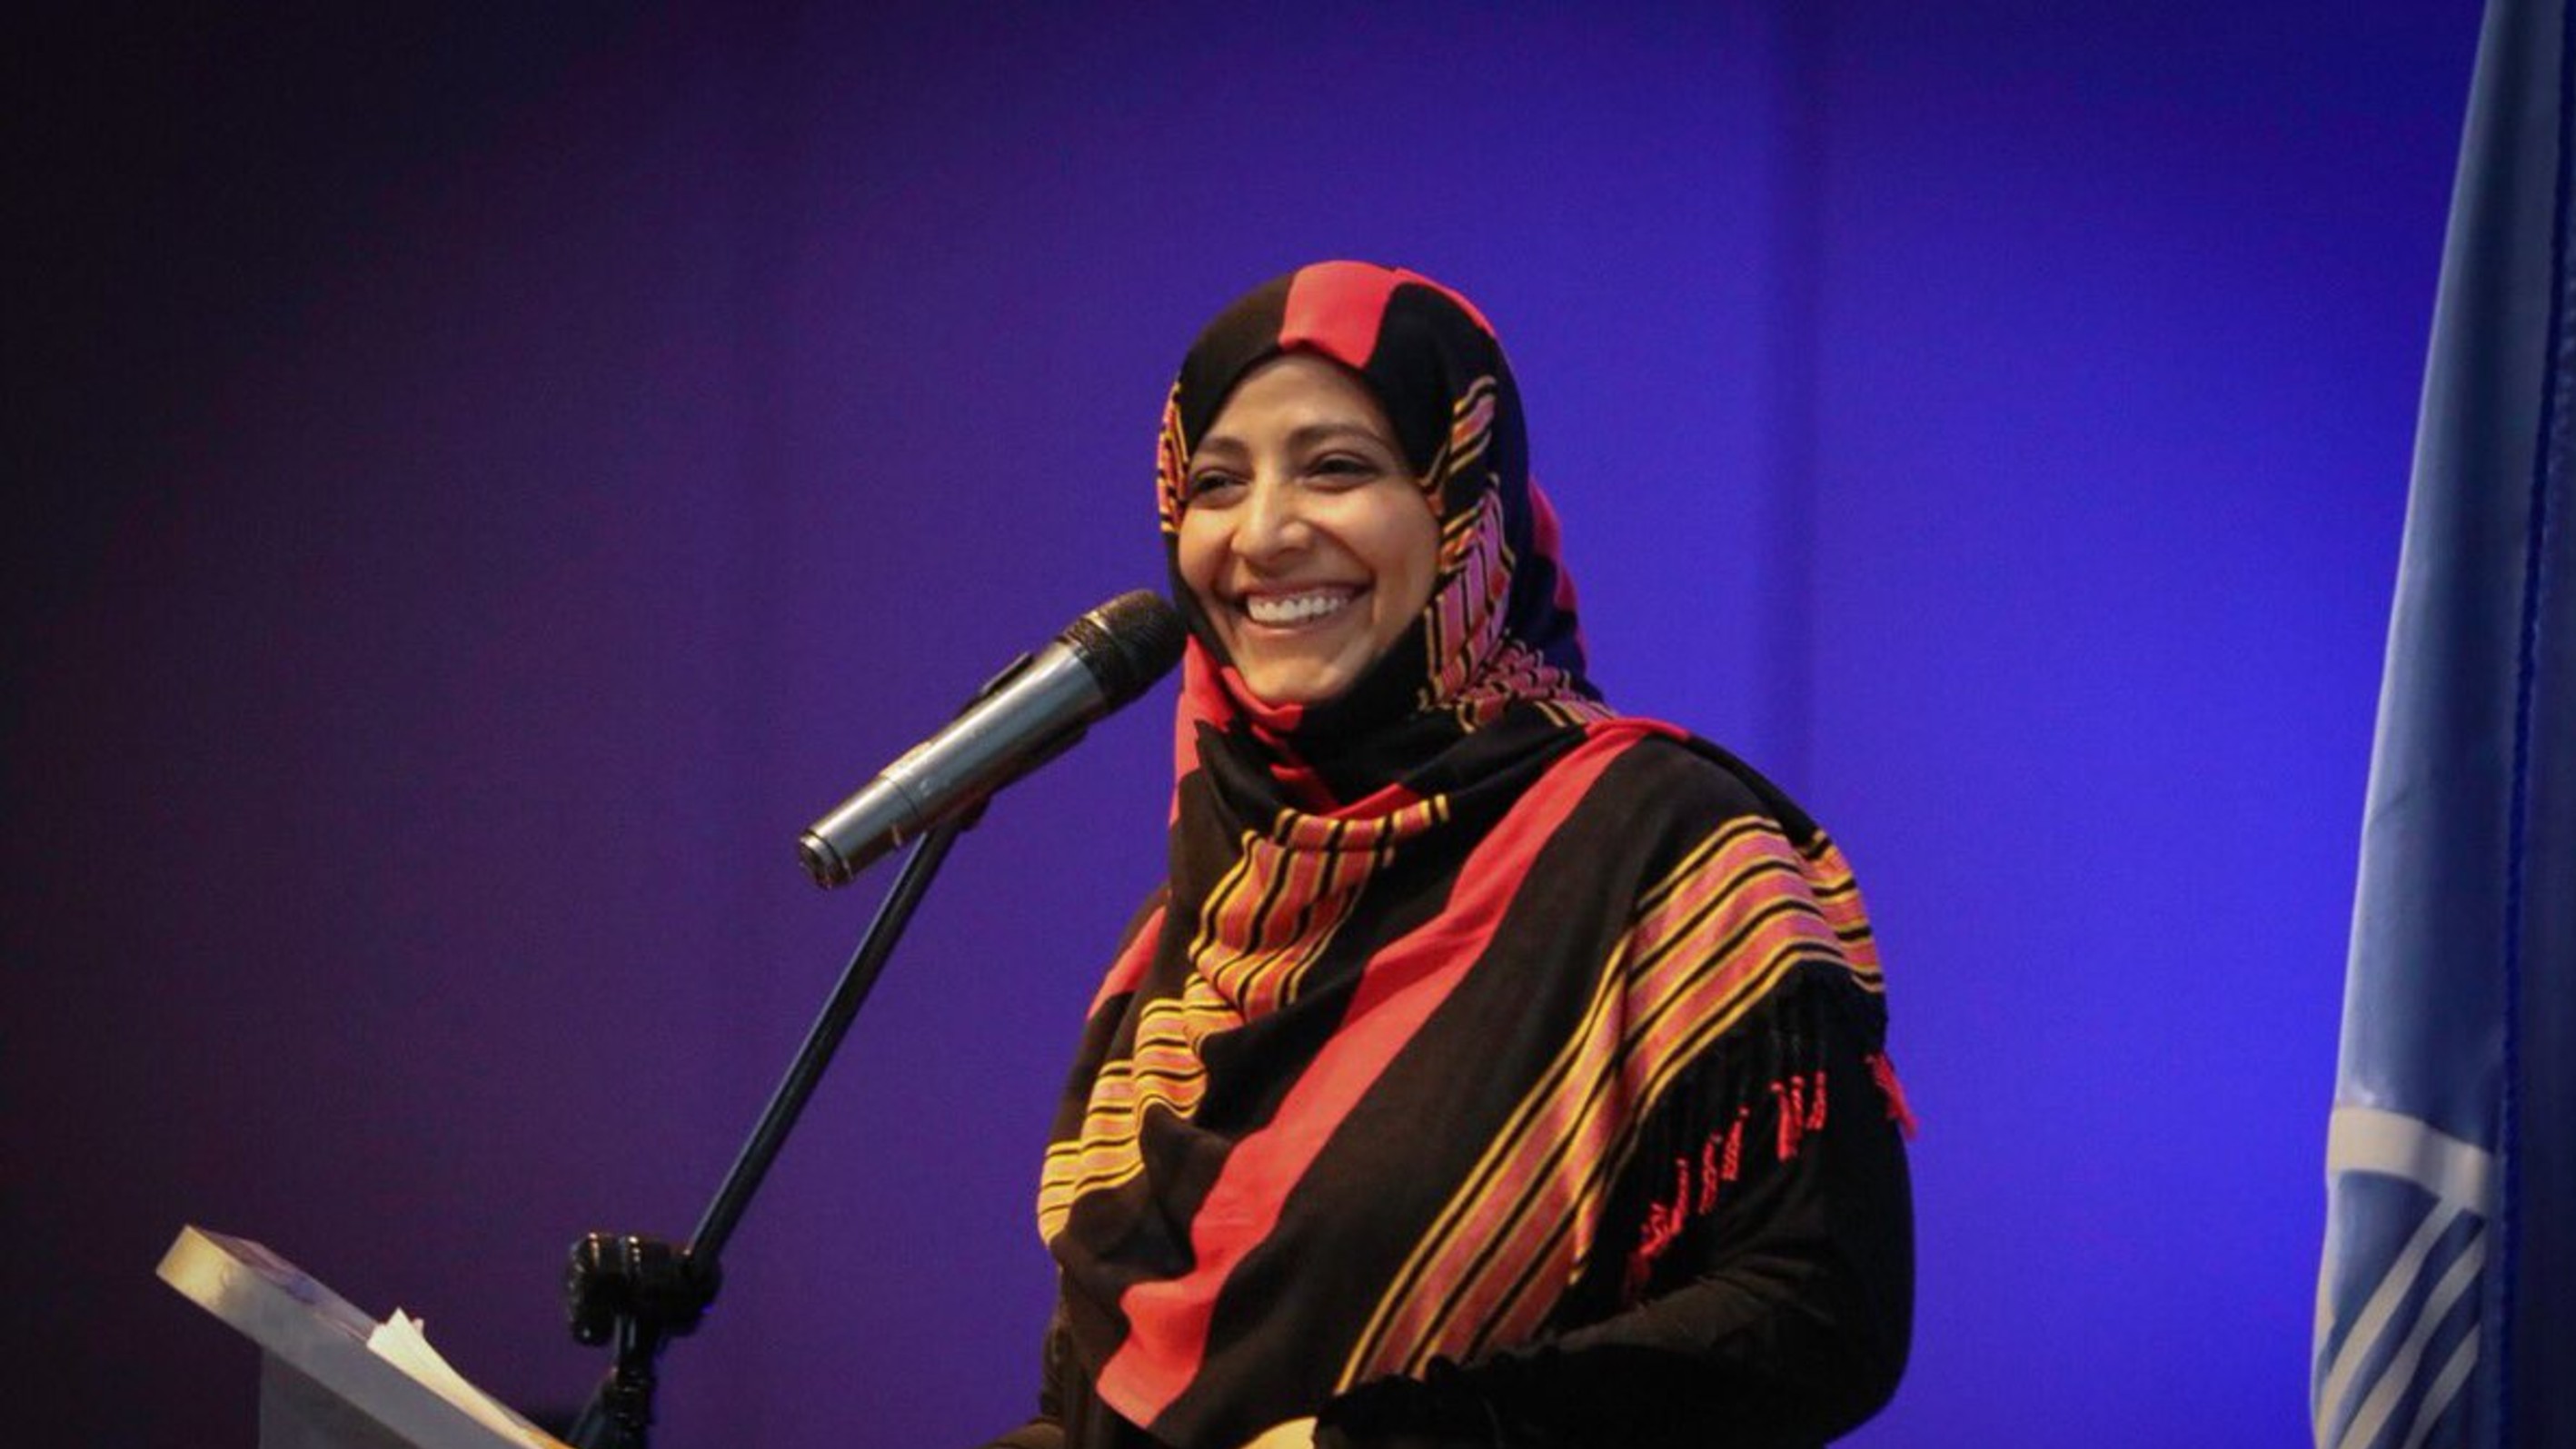 كلمة الناشطة الحائزة على جائزة نوبل للسلام توكل كرمان في الجلسة الافتتاحية بمؤتمر مركز توكل كرمان للديمقراطية والسلام العالمي بجامعة اسطنبول ايدن